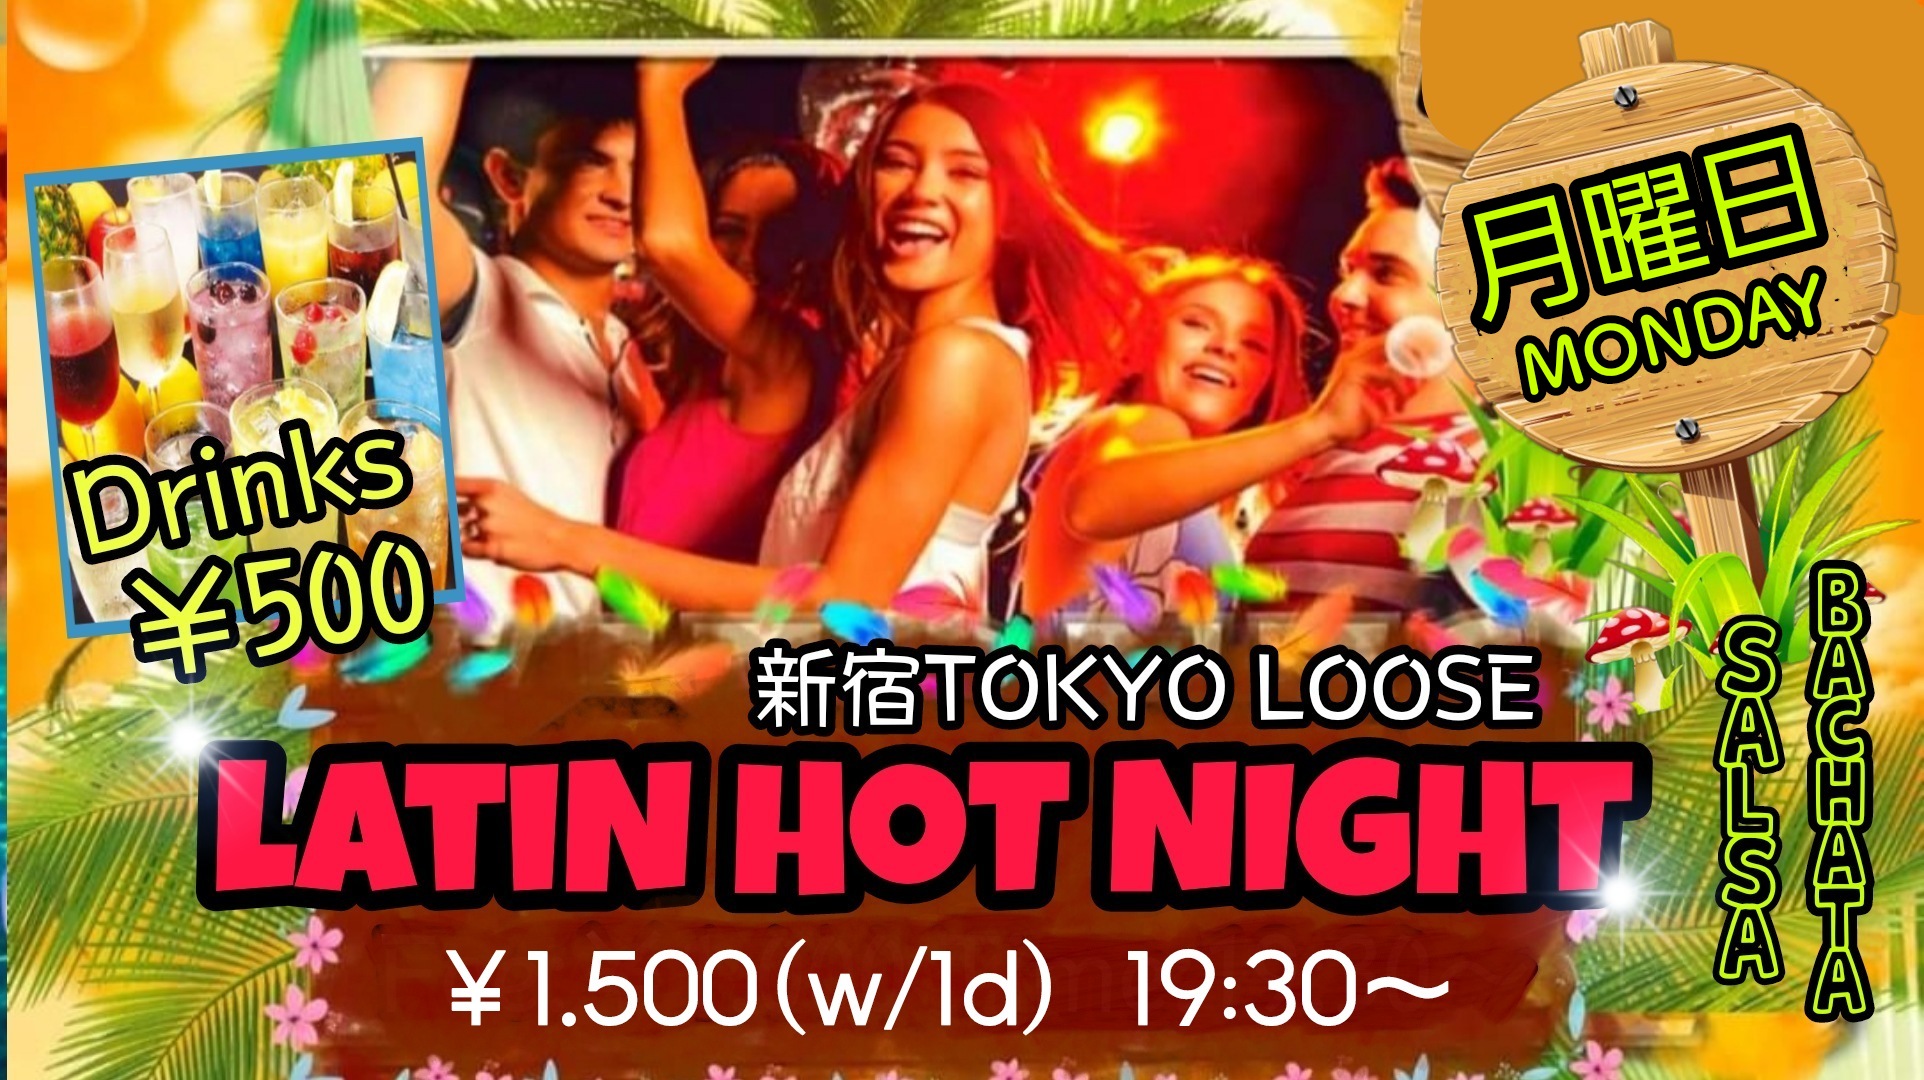 6/27(月)LATIN HOT NIGHT@新宿Tokyo Loose